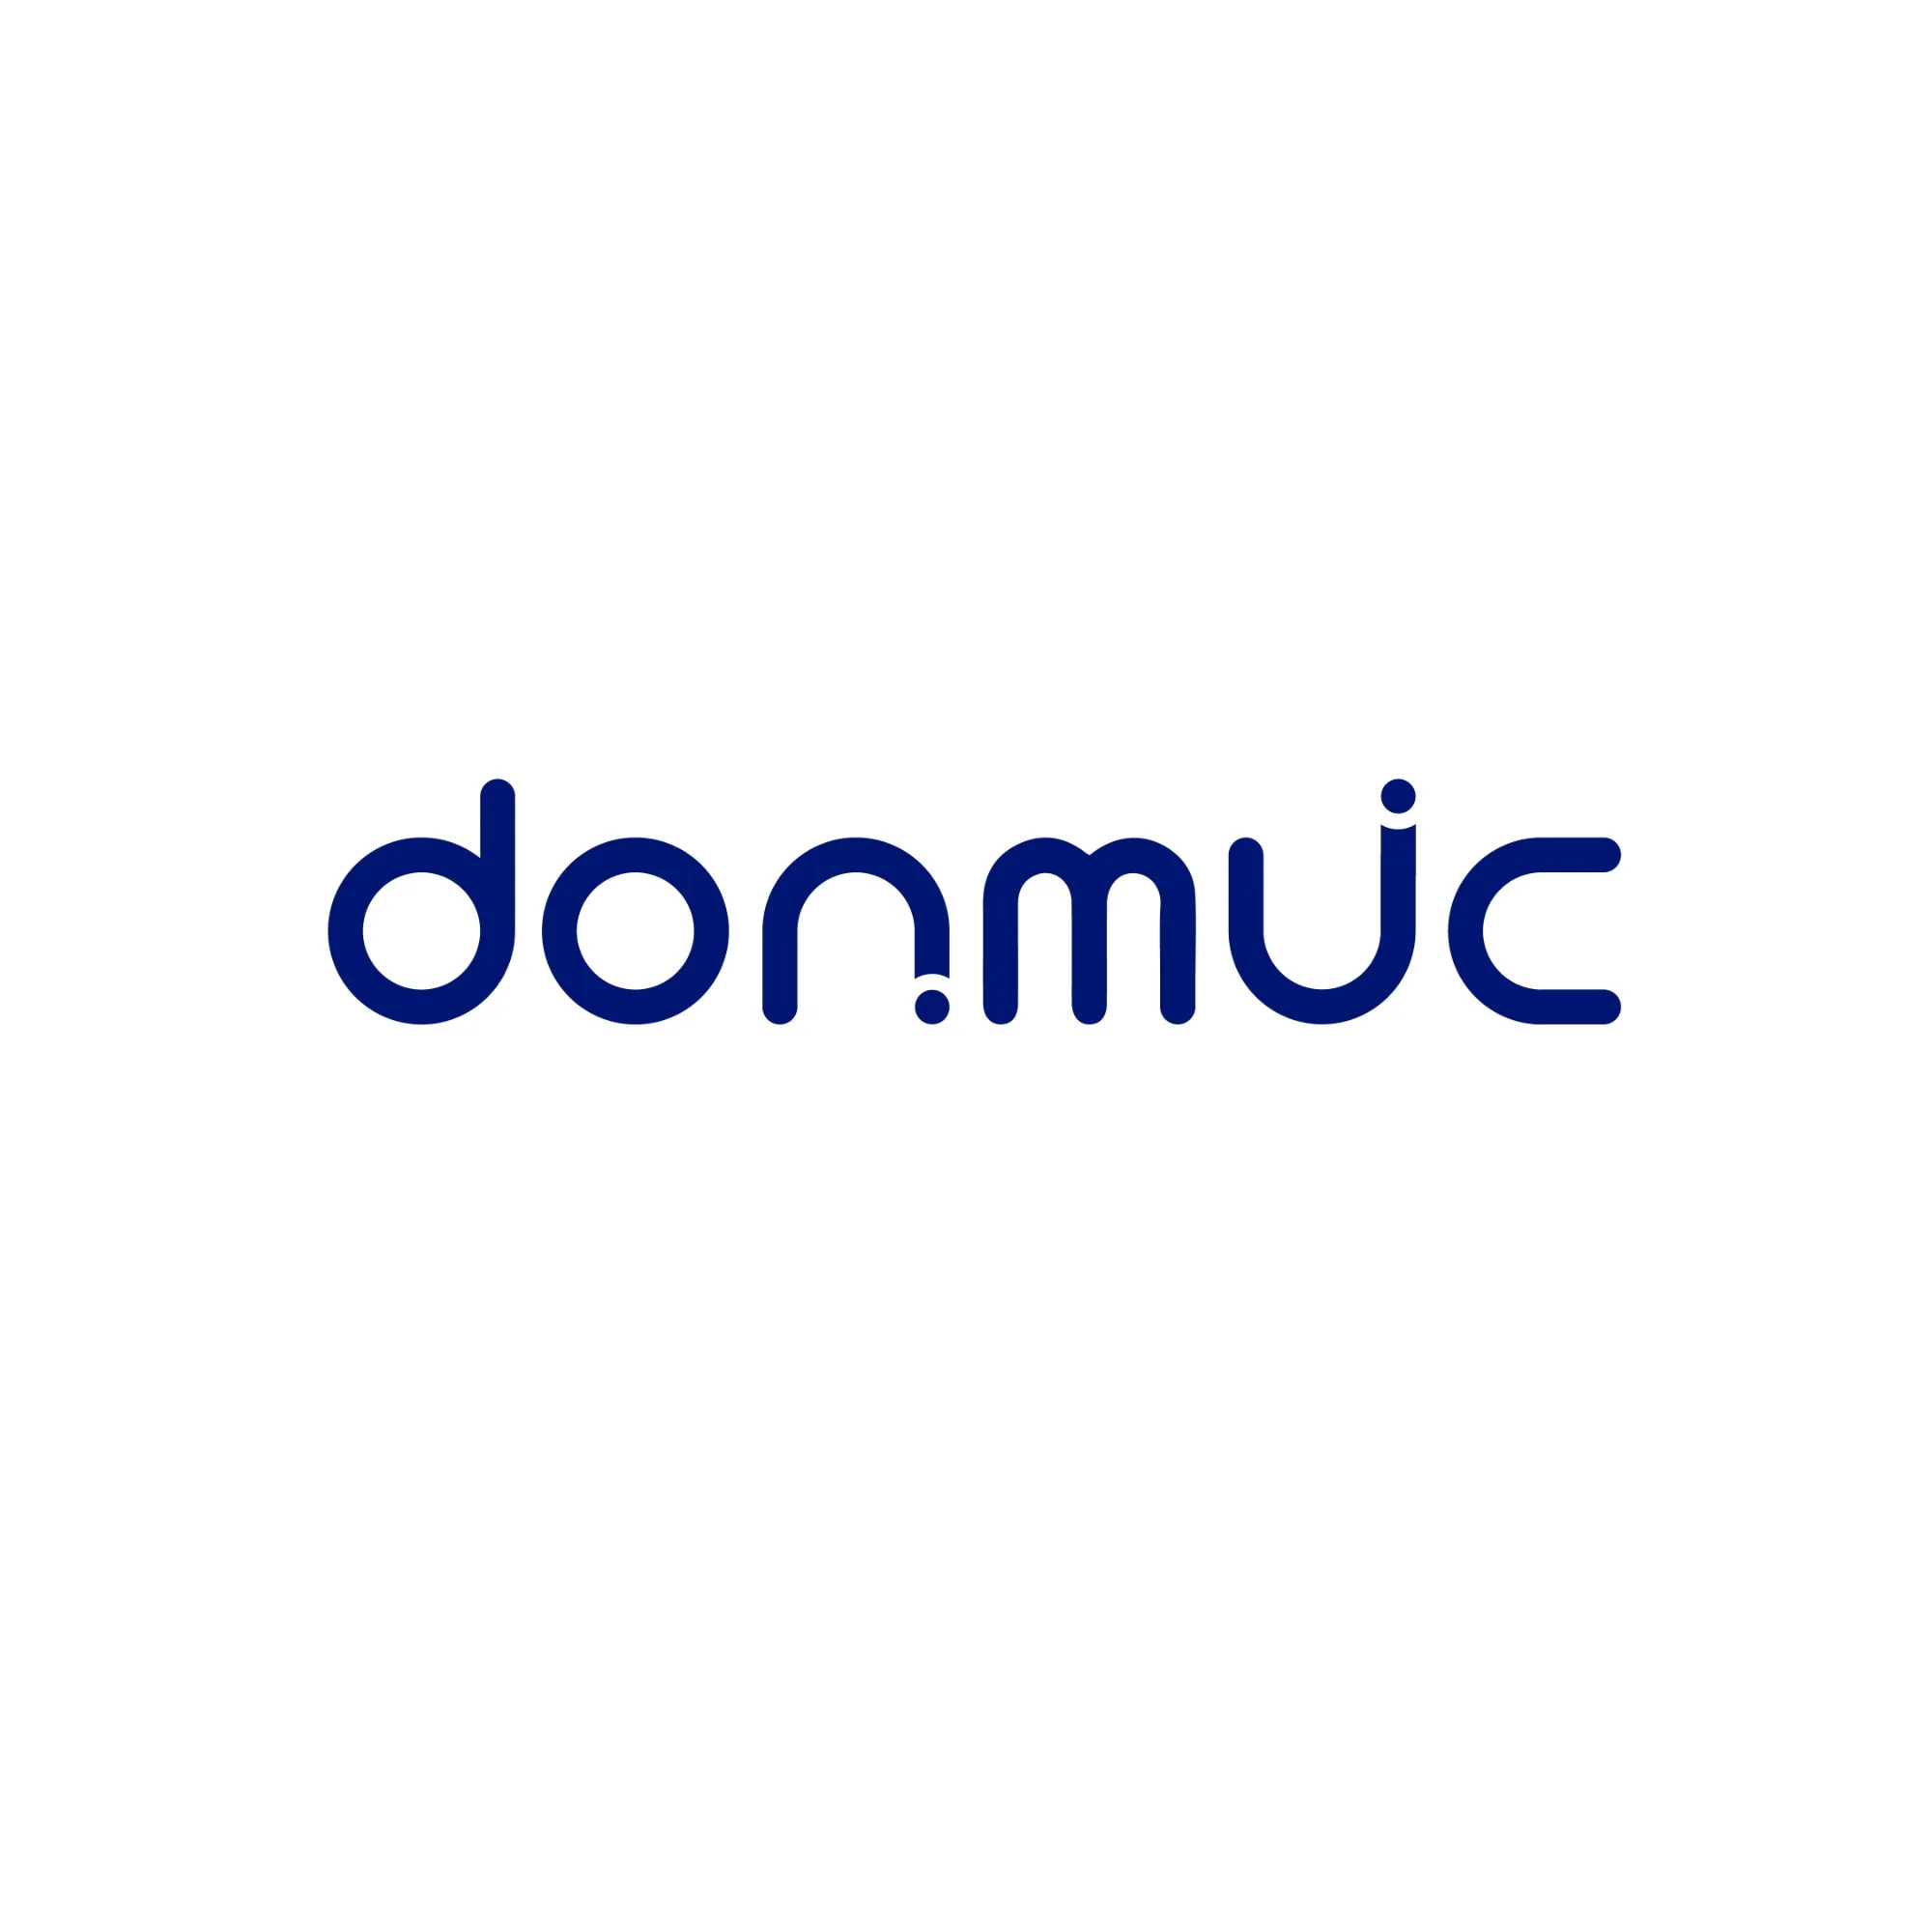 donmuc品牌提供智能家居智能酒店解决方案同时具备odm和oem服务